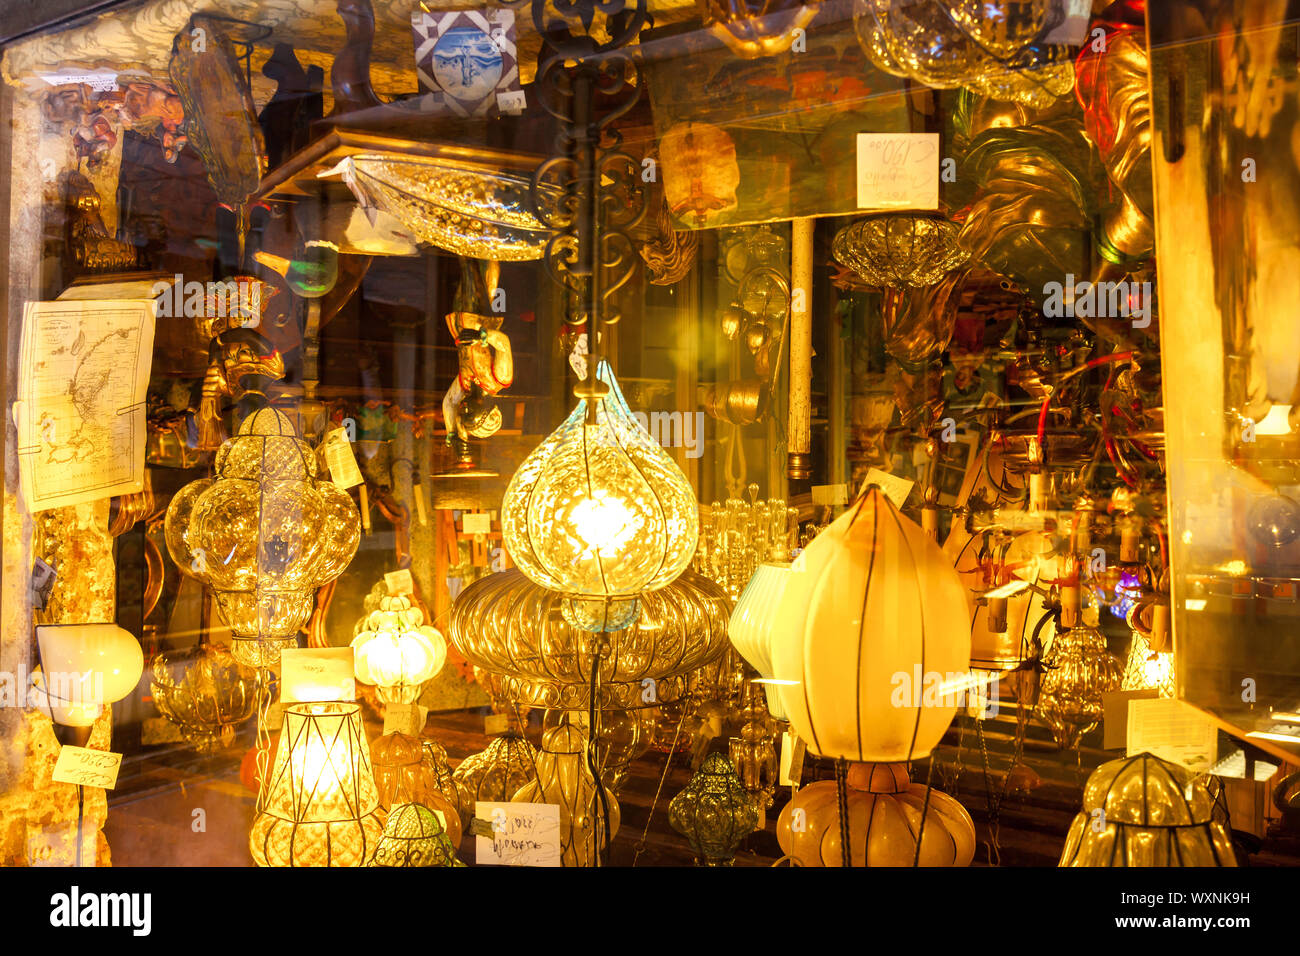 Lampes d'éclairage et vu à travers la fenêtre d'une boutique à Venise Italie Banque D'Images